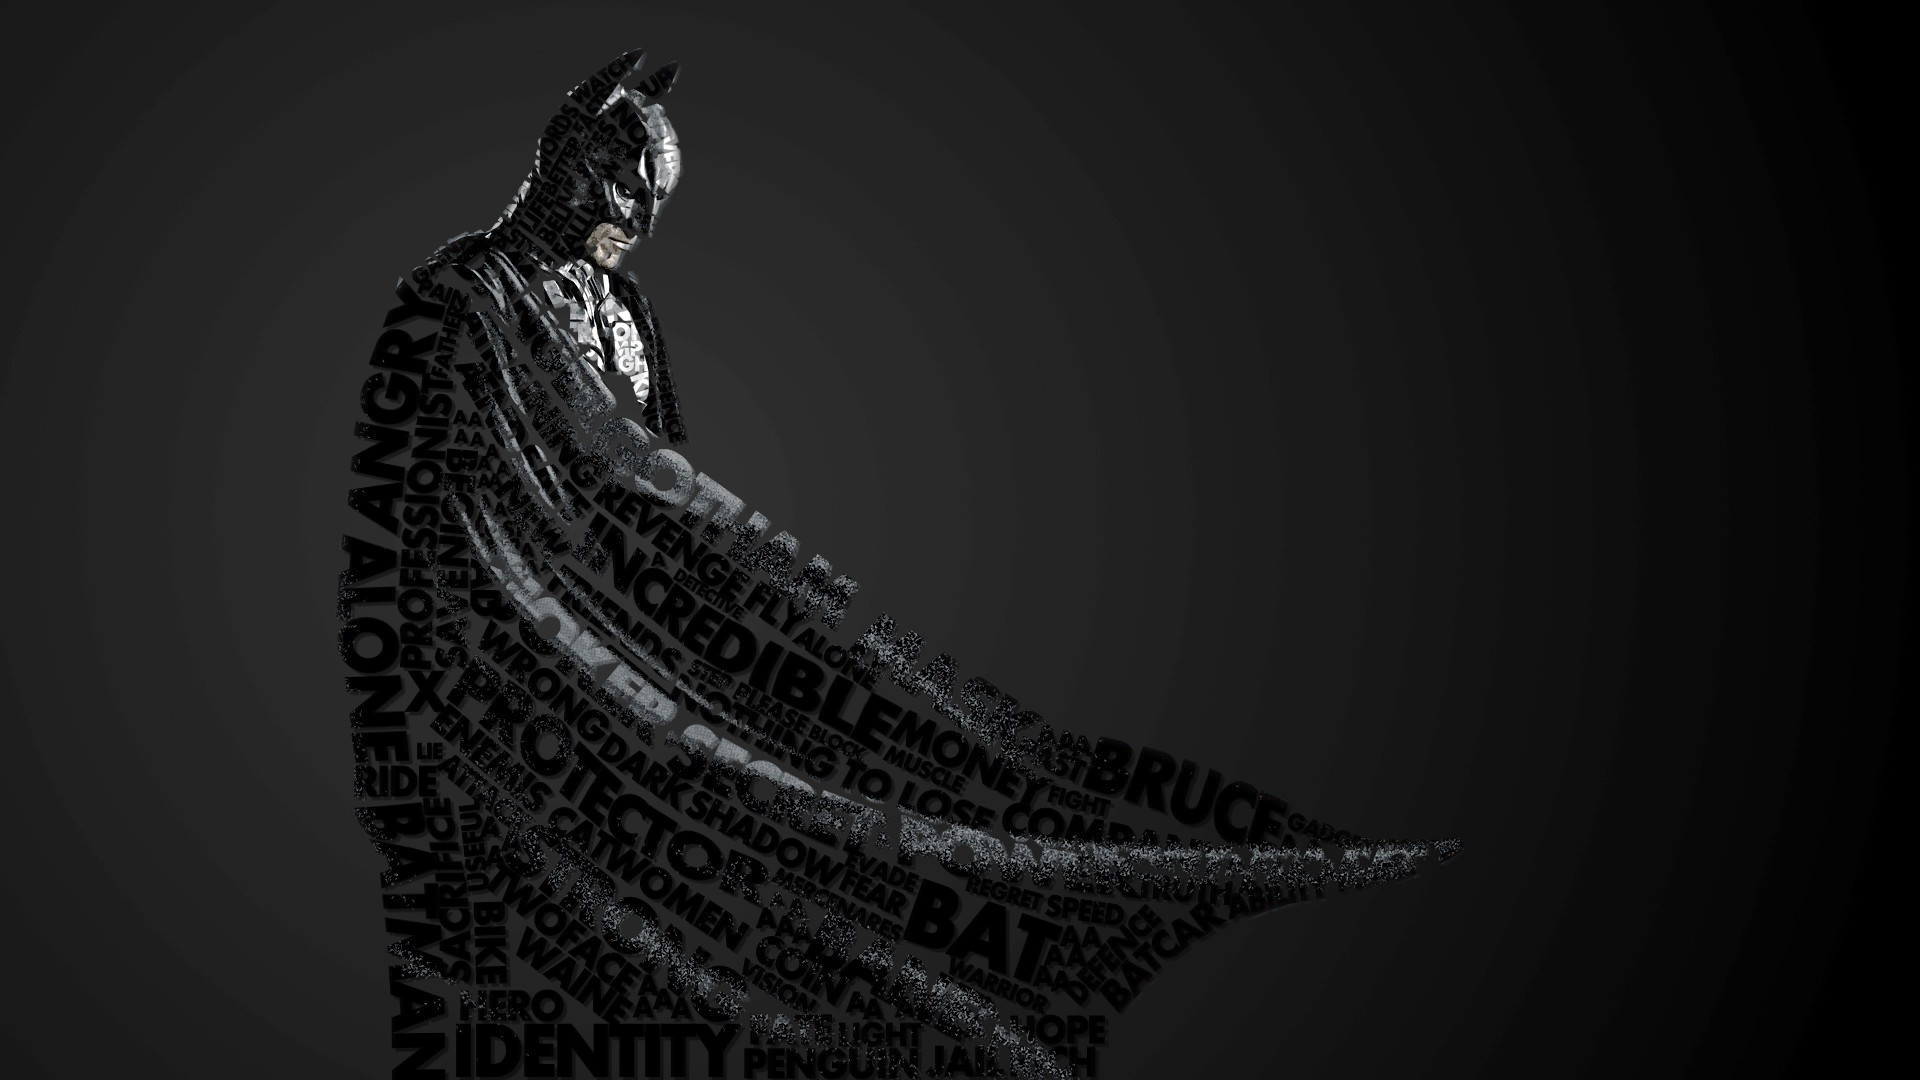 Batman Beyond Hd Wallpapers 1080p A new computer wallpaper